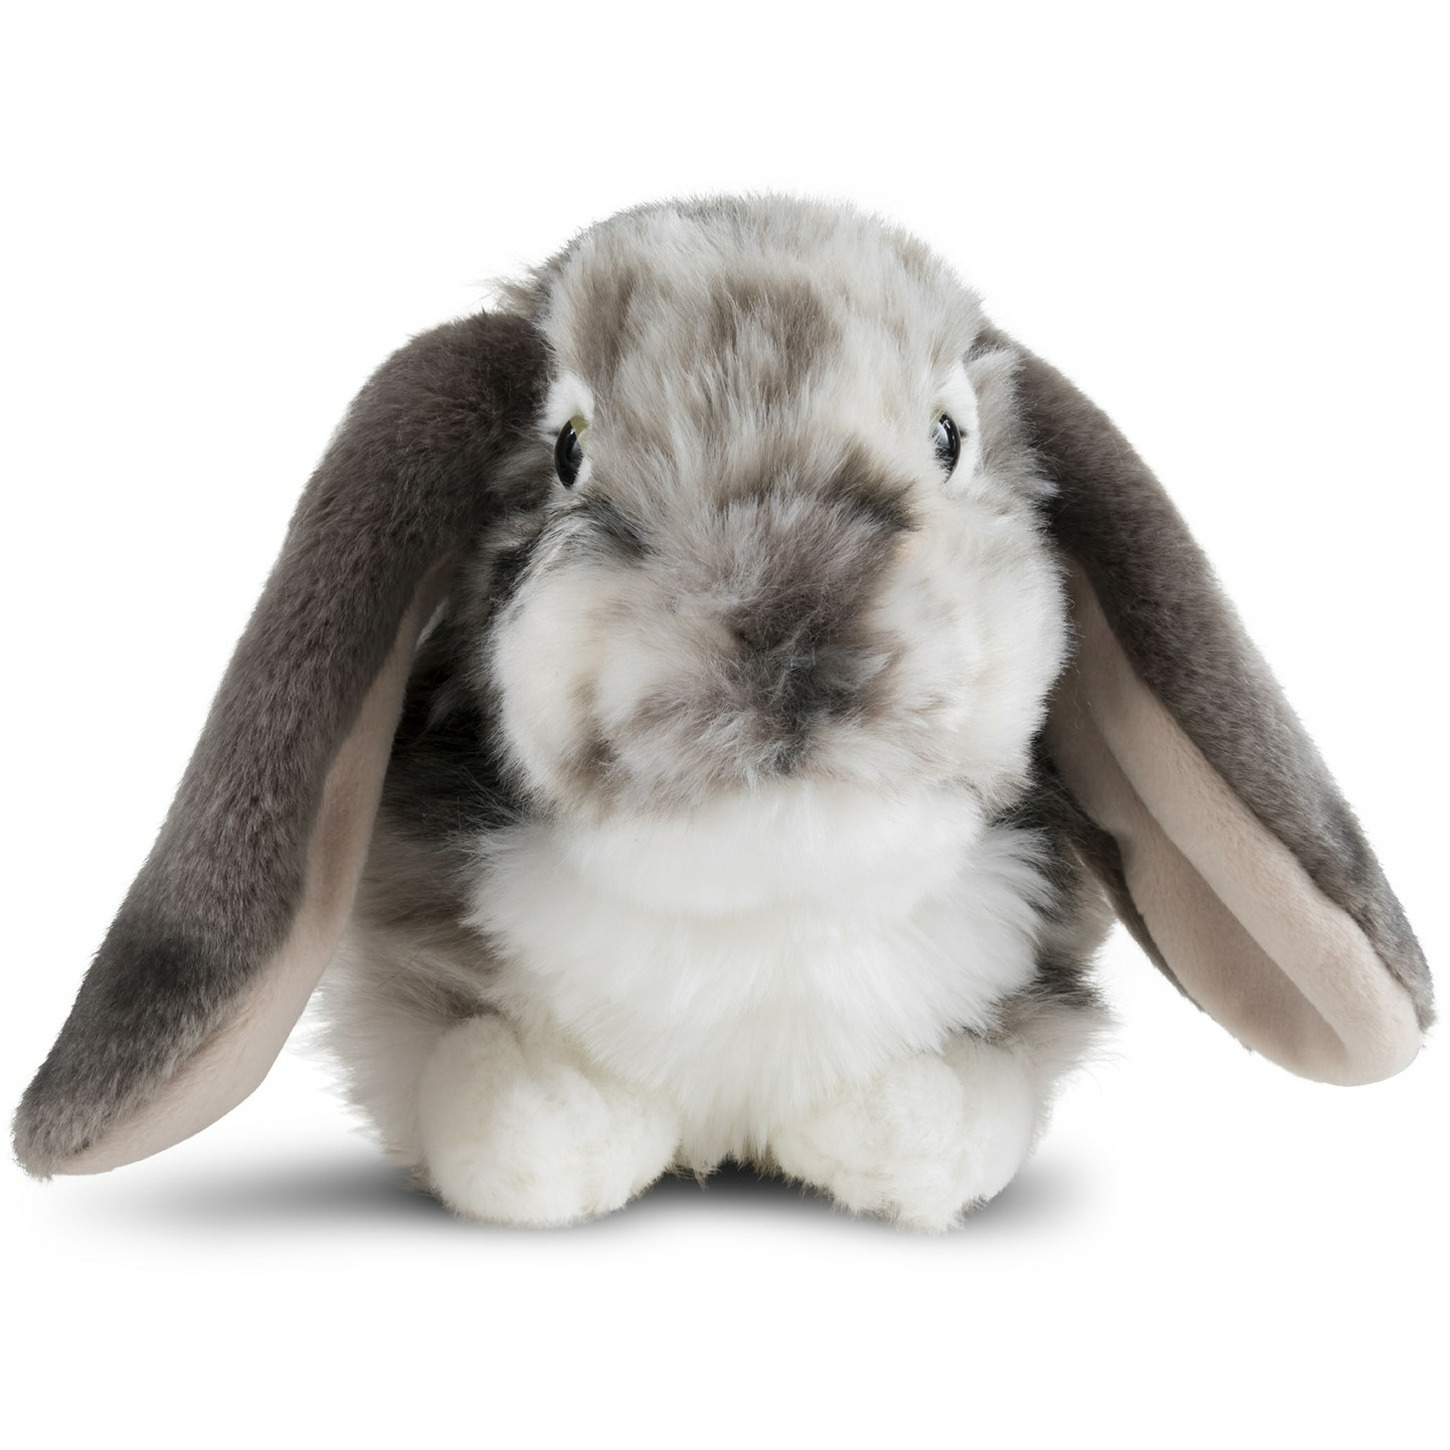 Afbeelding Pluche grijze/witte konijnen knuffel liggend 30 cm knuffeldieren door Animals Giftshop